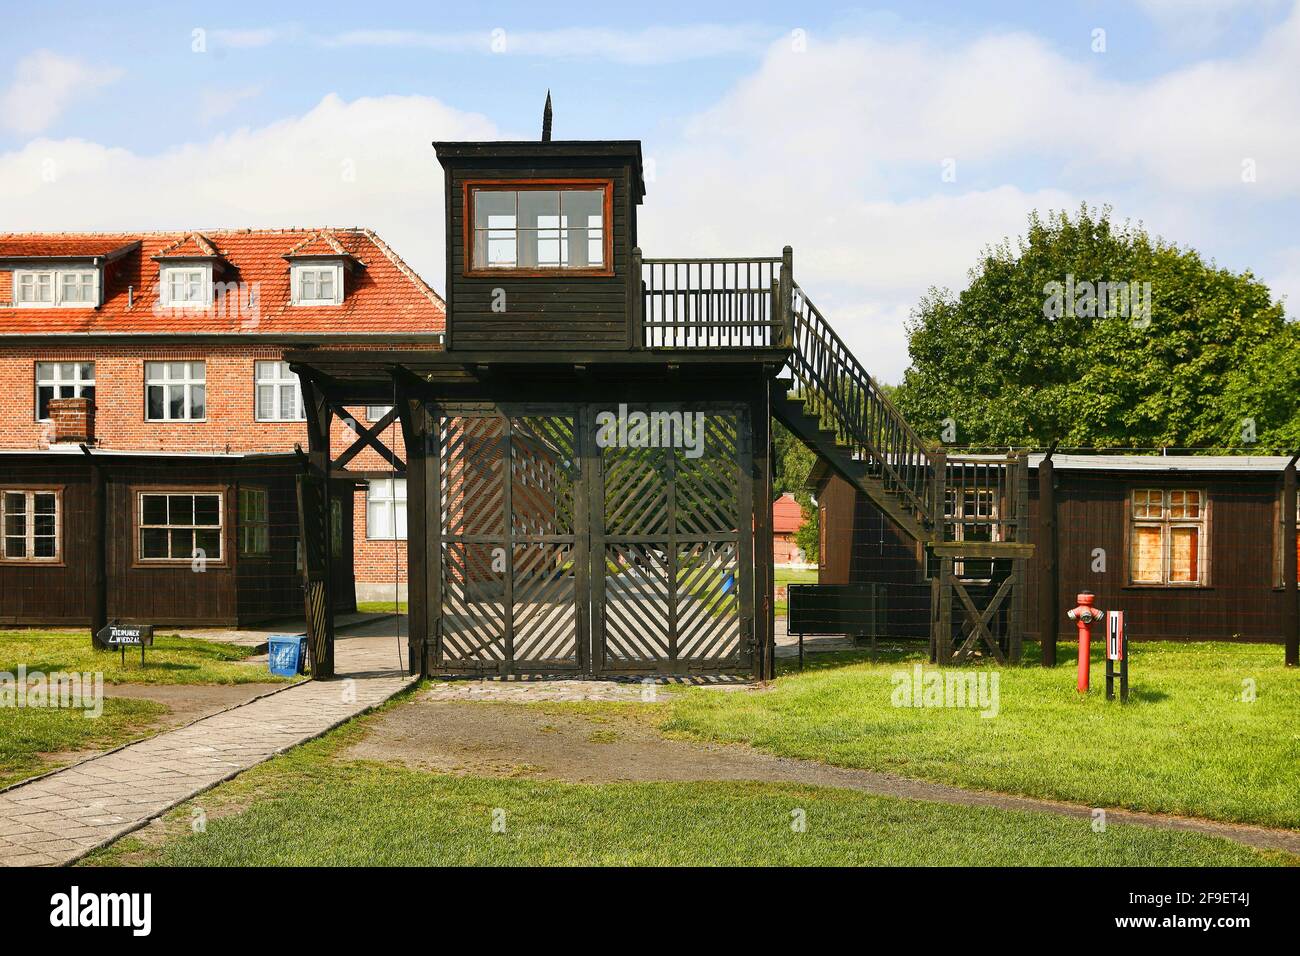 Poland, Sztutowo, Nazi concentration camp, Pomerania voivodeship. Stock Photo